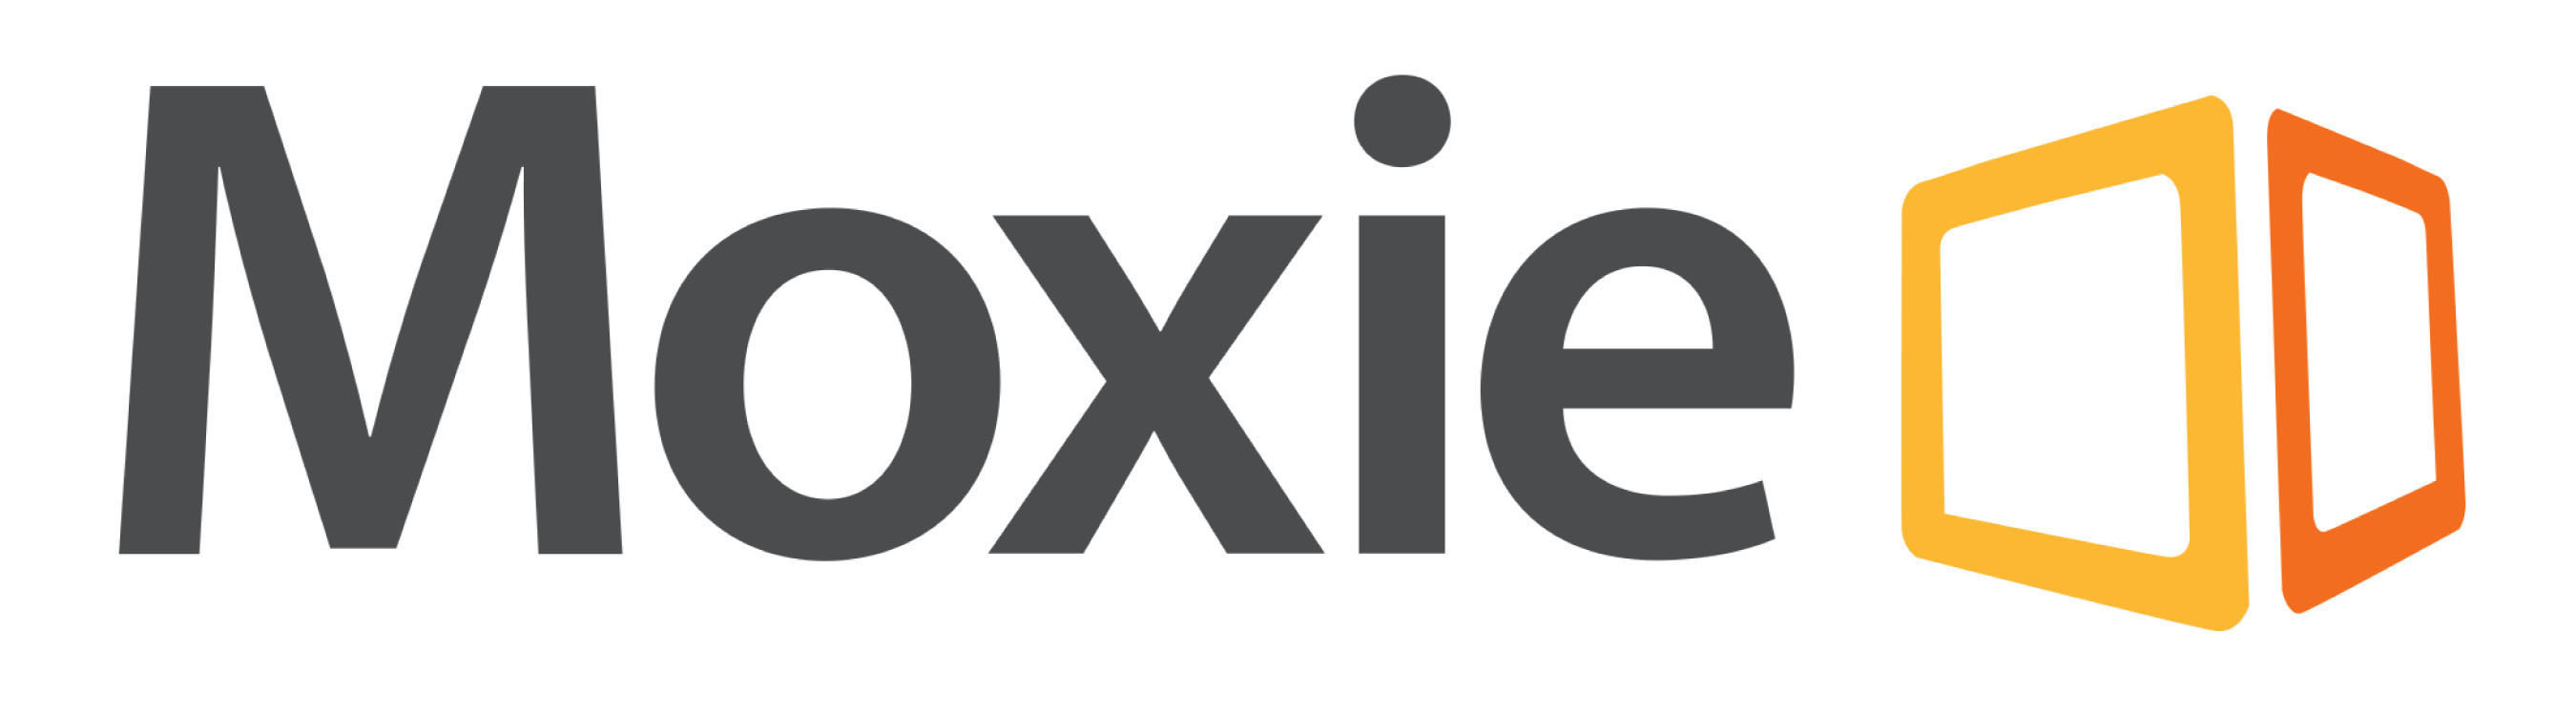 2014 Moxie logo.